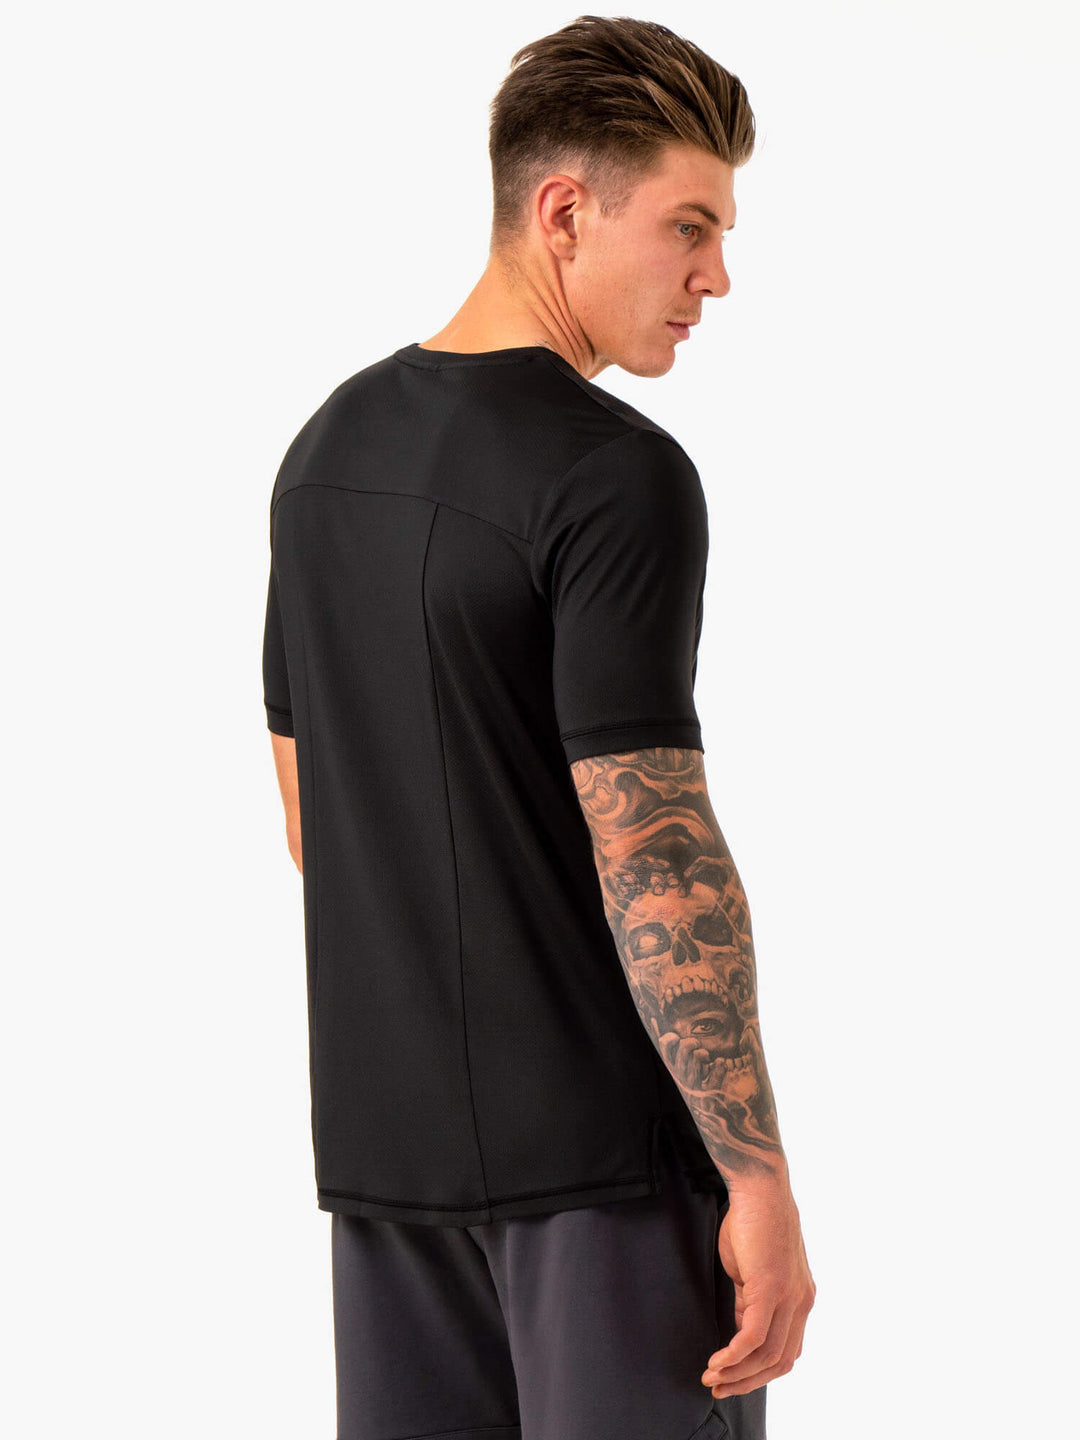 Optimal Mesh T-Shirt - Black Clothing Ryderwear 